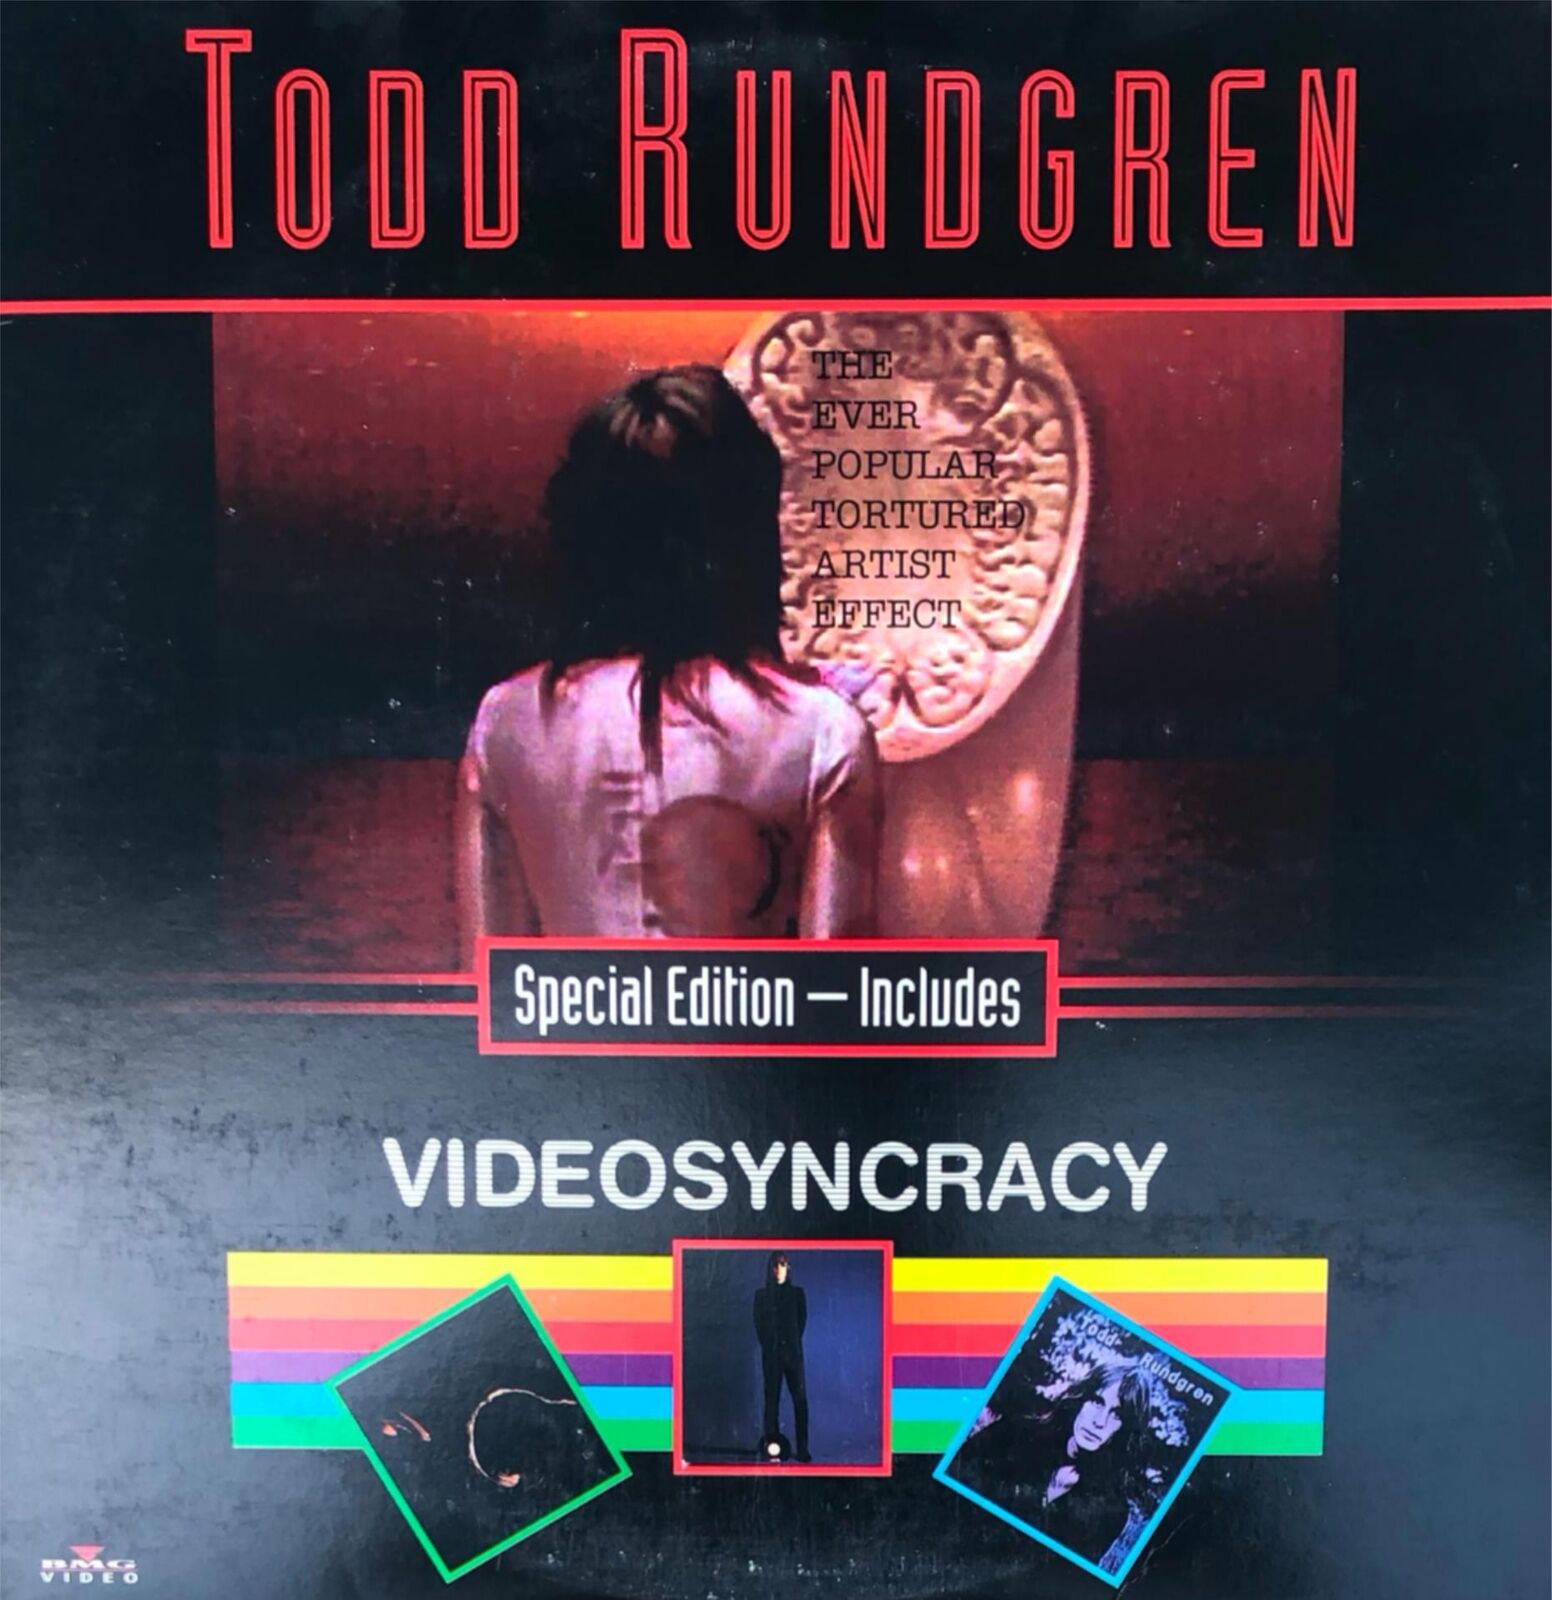 Todd Rundgren- The Ever Popular Tortured Artist Effect/ Videosyncracy - Darkside Records